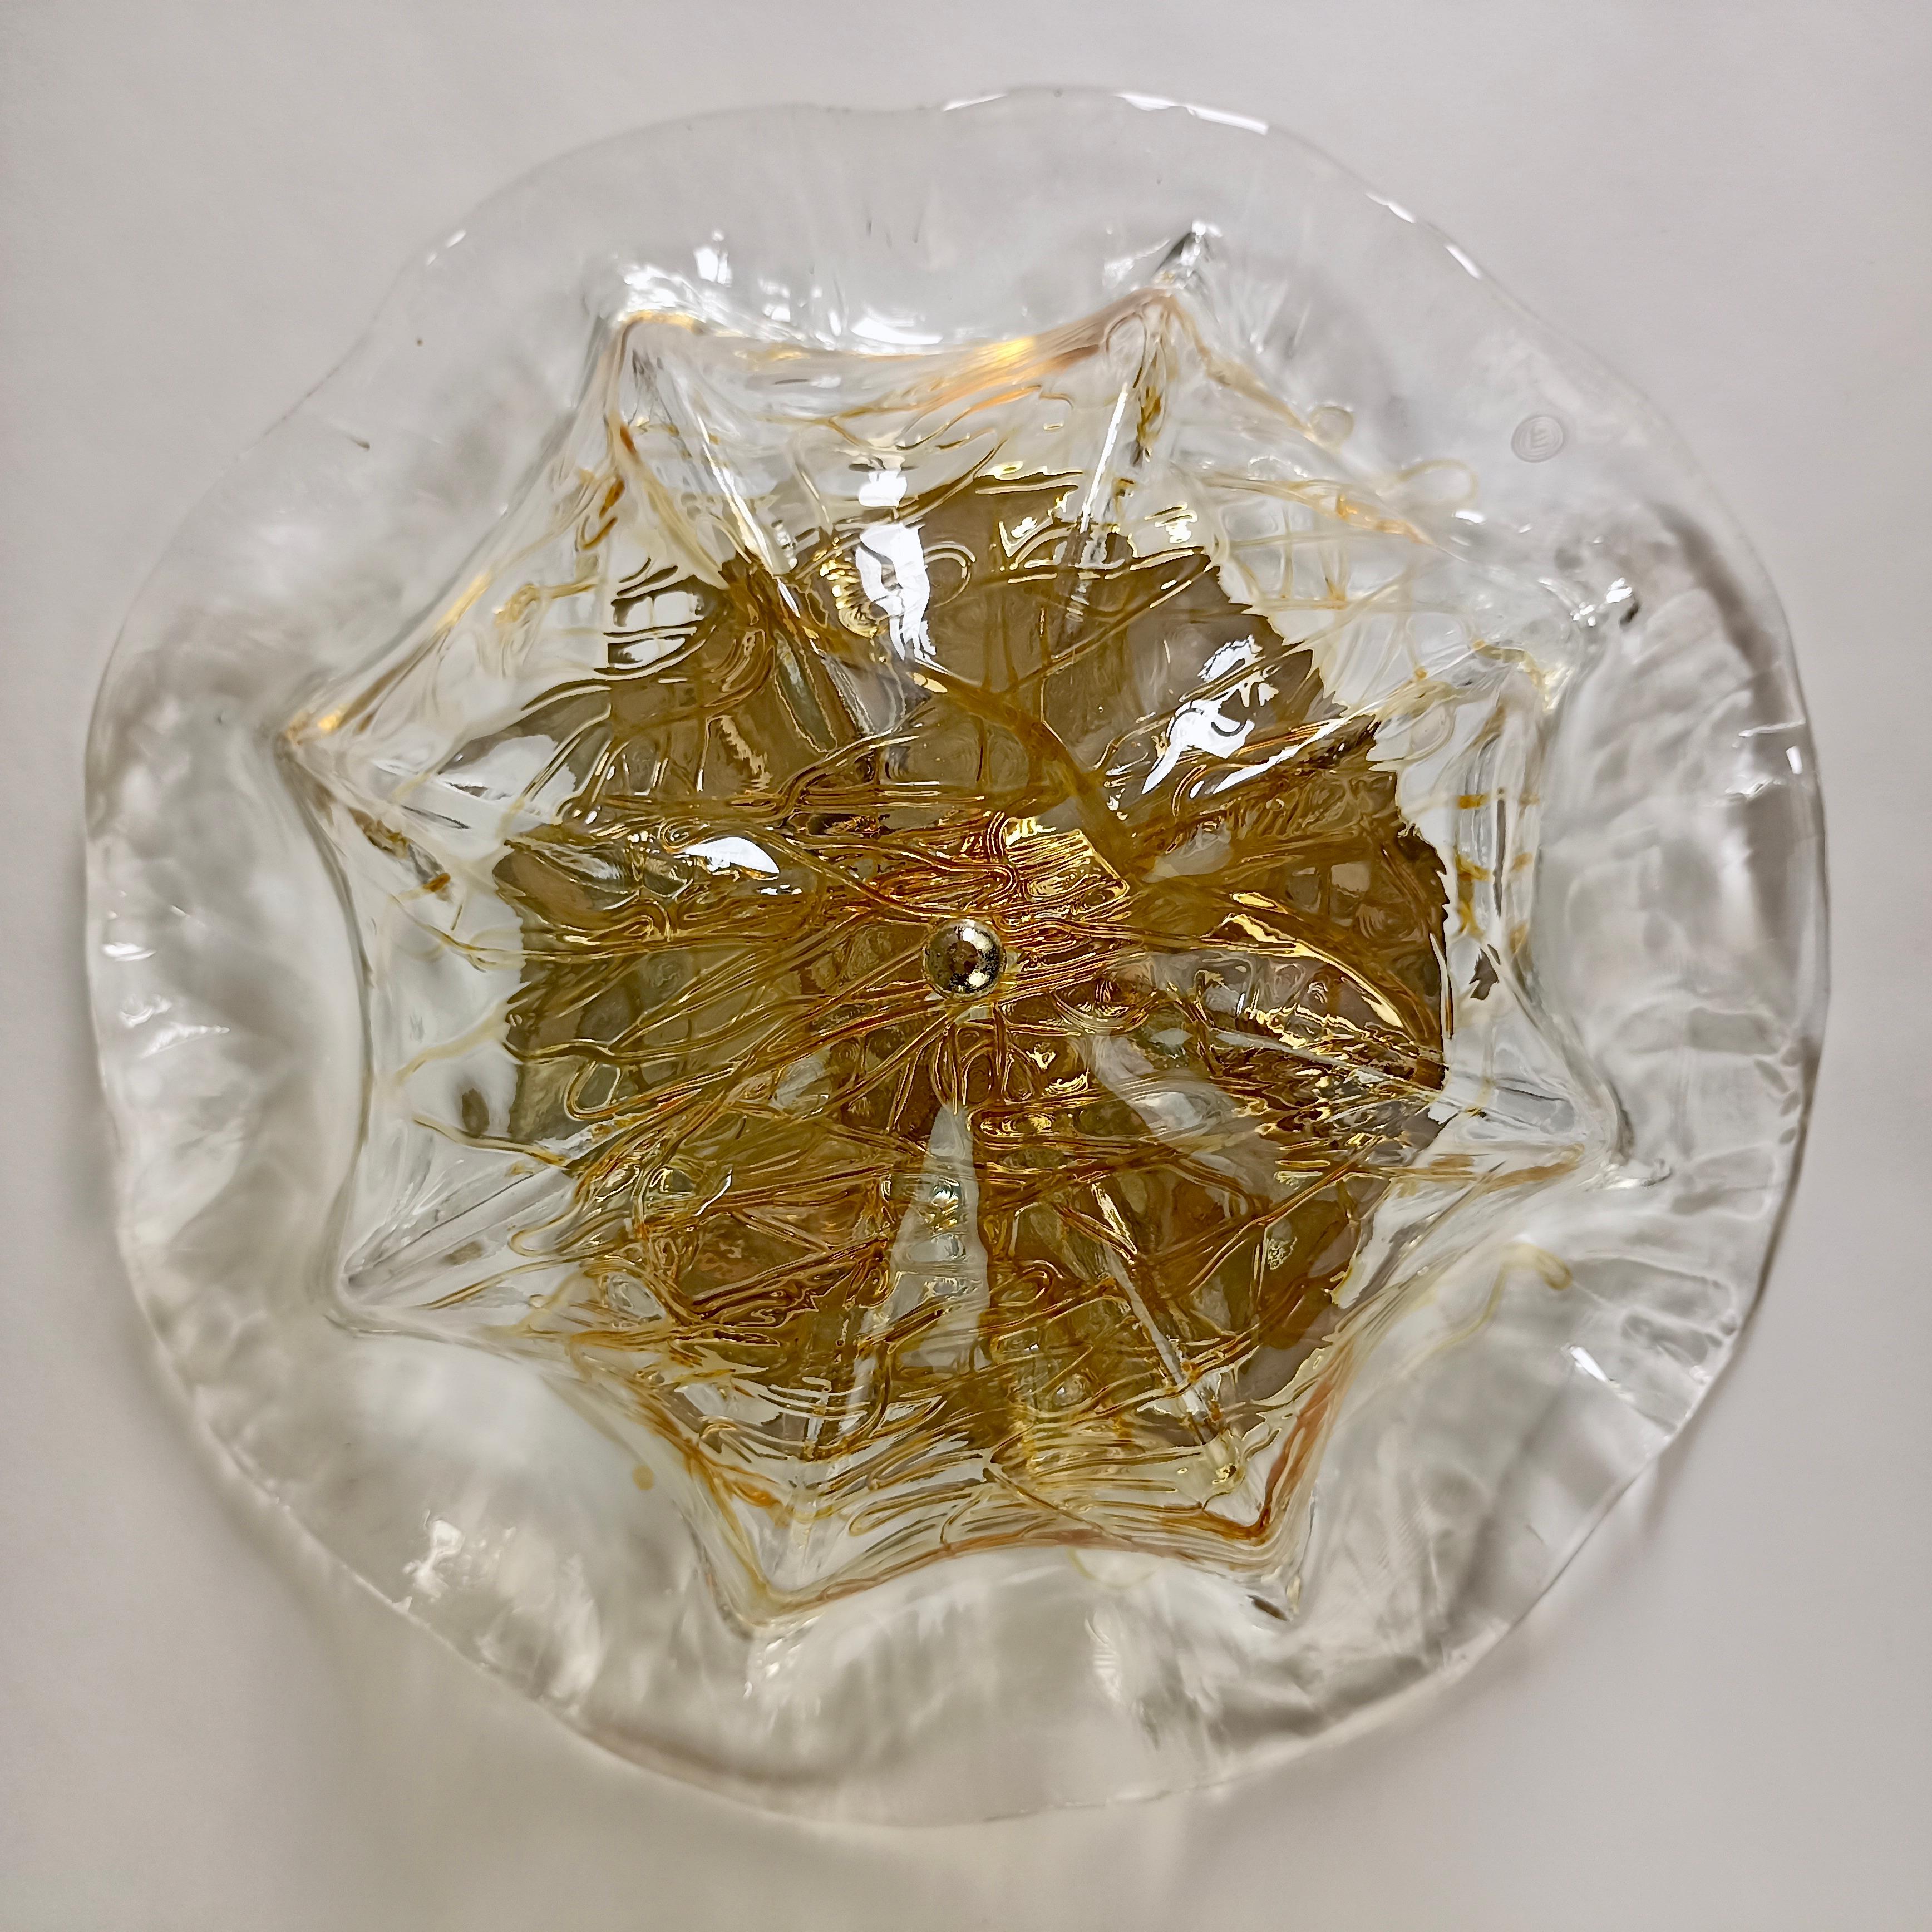 Italian 1990s La Murrina Murano hand-blown art glass three-light ceiling lamp. Signed.